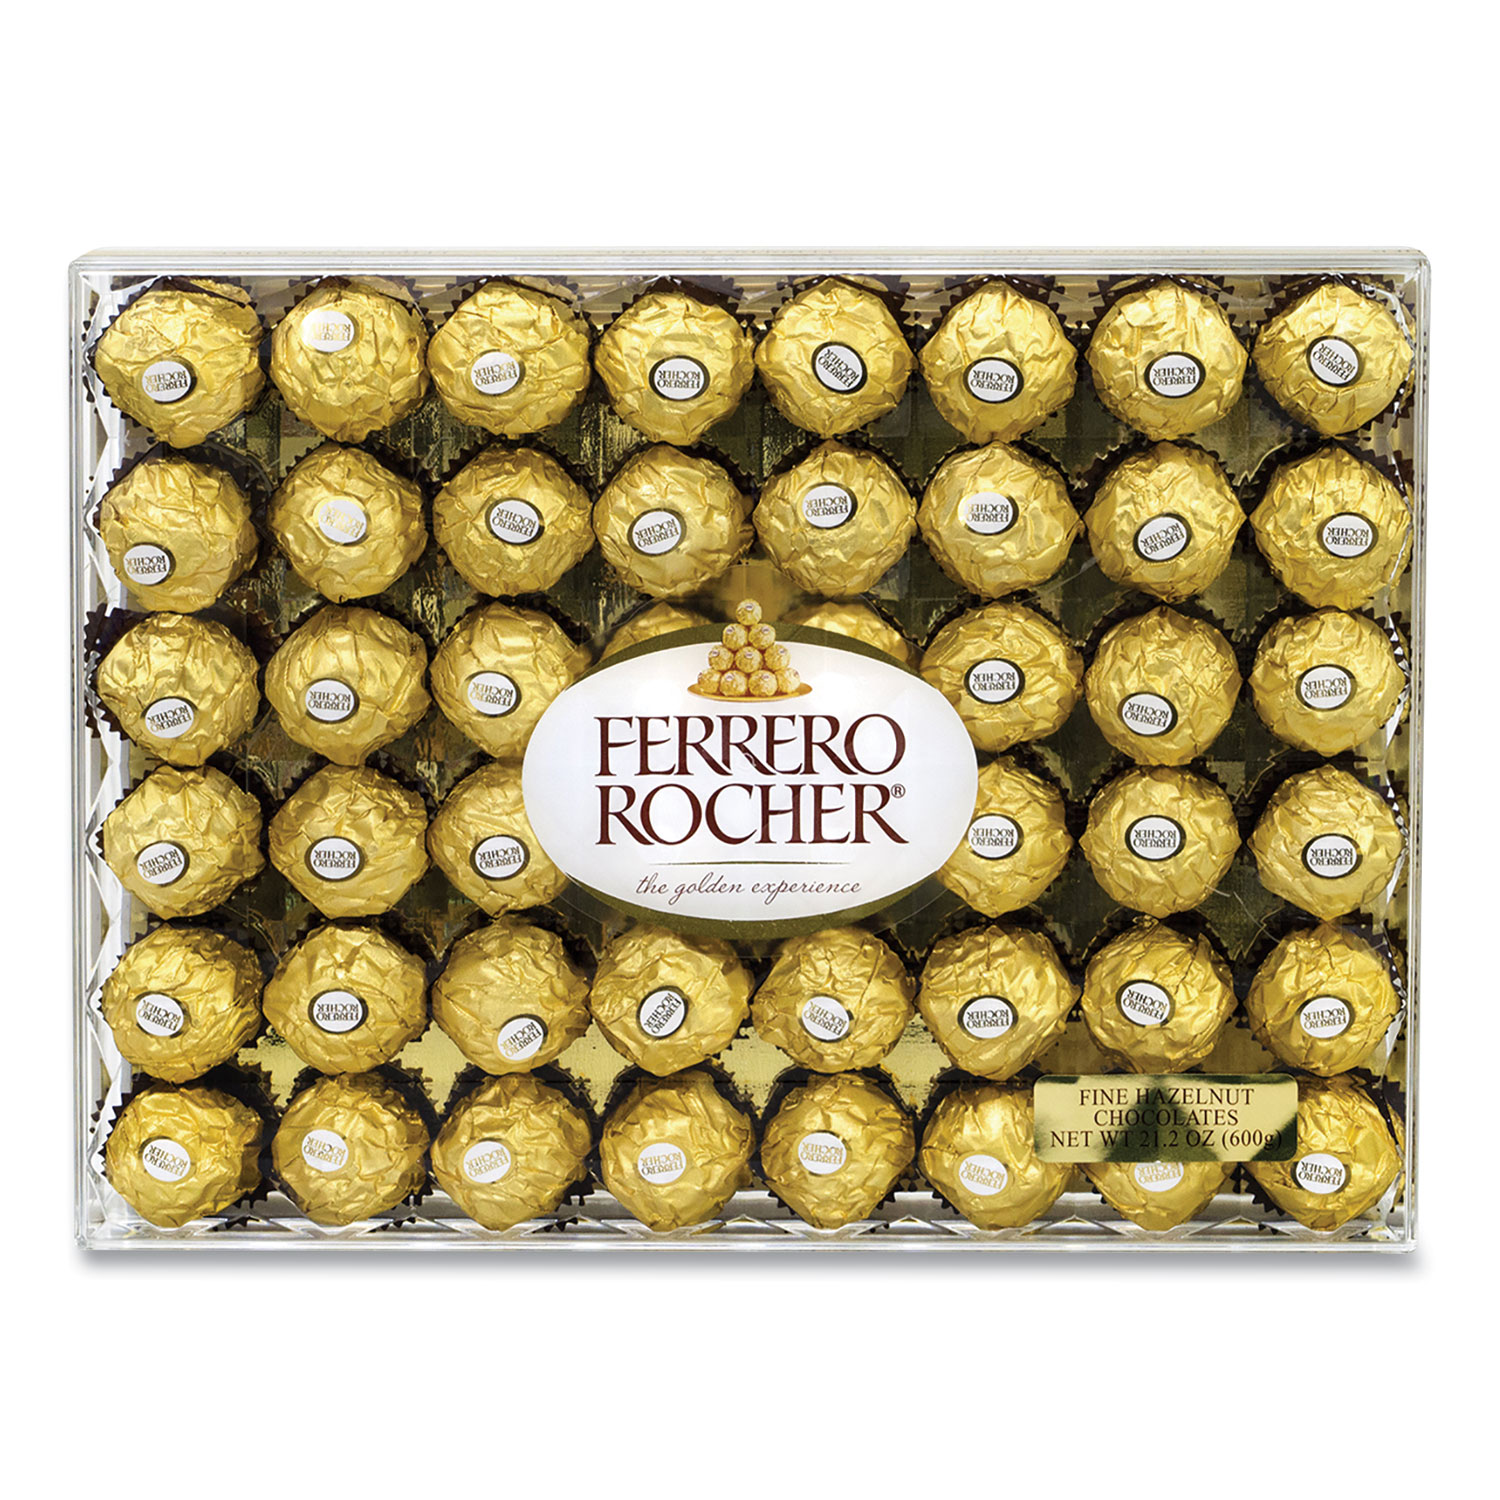  FERRERO ROCHER 12991 Hazelnut Chocolate Diamond Gift Box, 21.2 oz, 48 Pieces, Free Delivery in 1-4 Business Days (GRR24100015) 